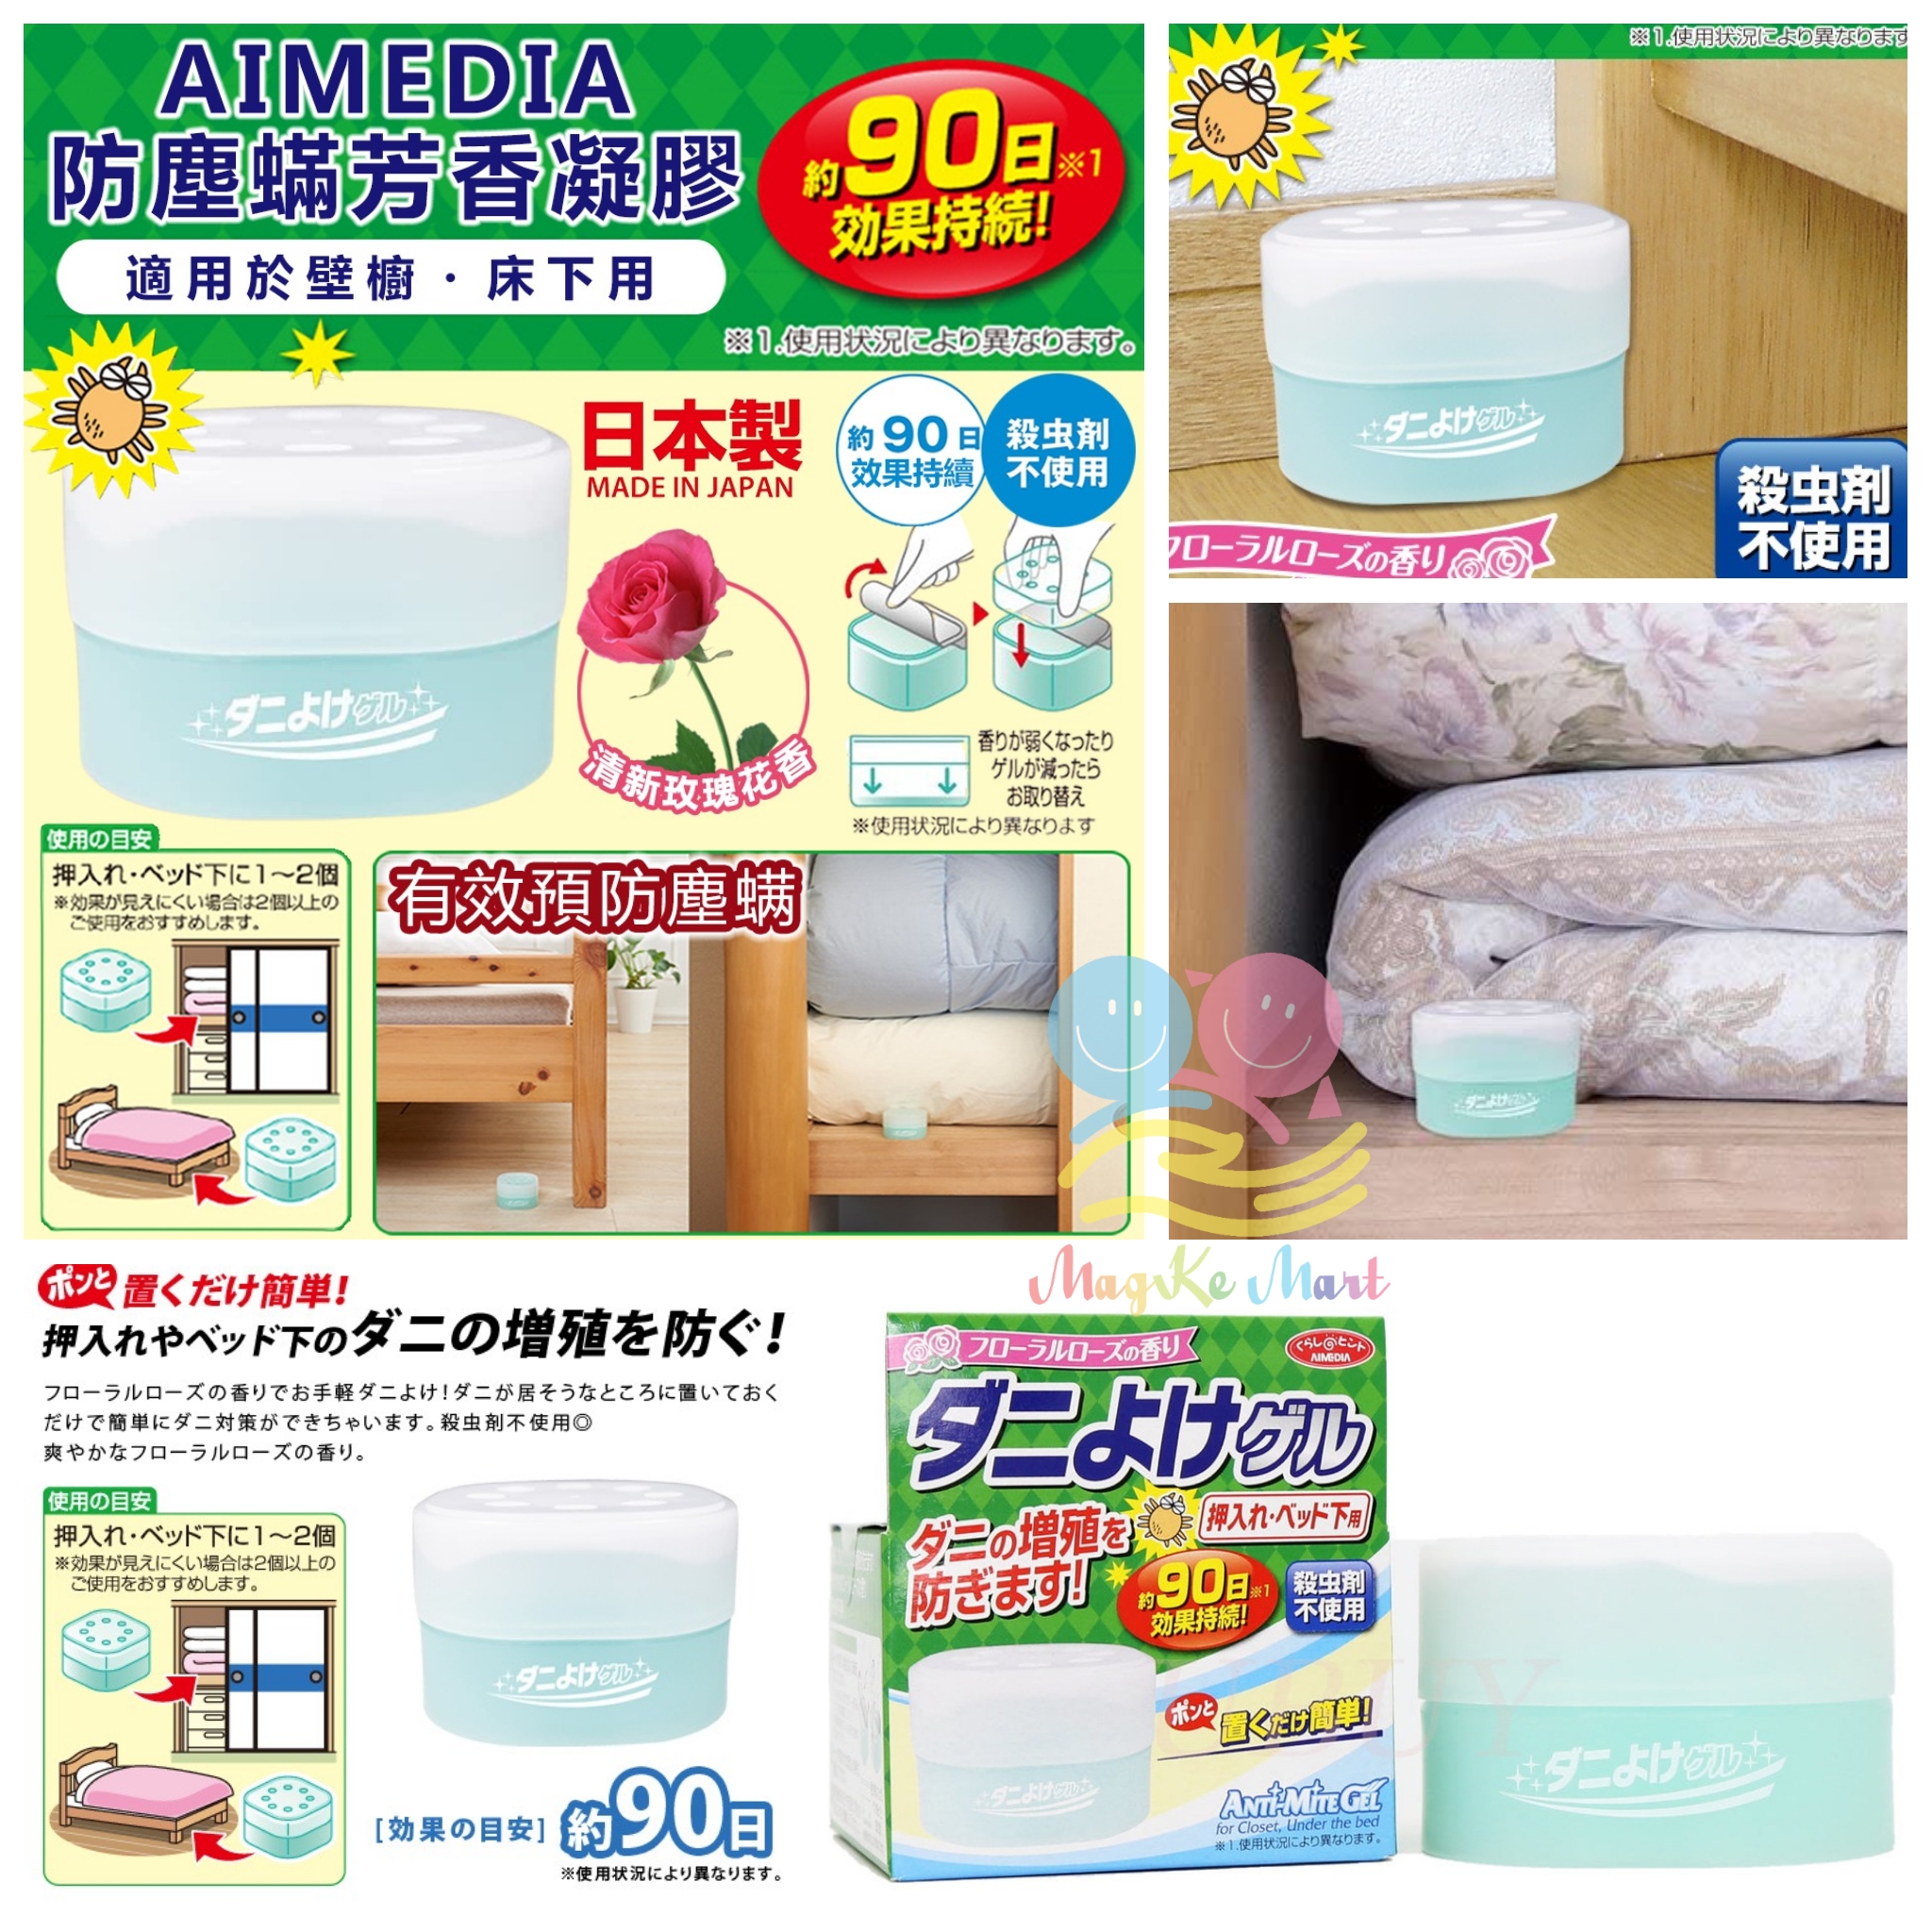 日本 AIMEDIA 防塵蟎芳香凝膠